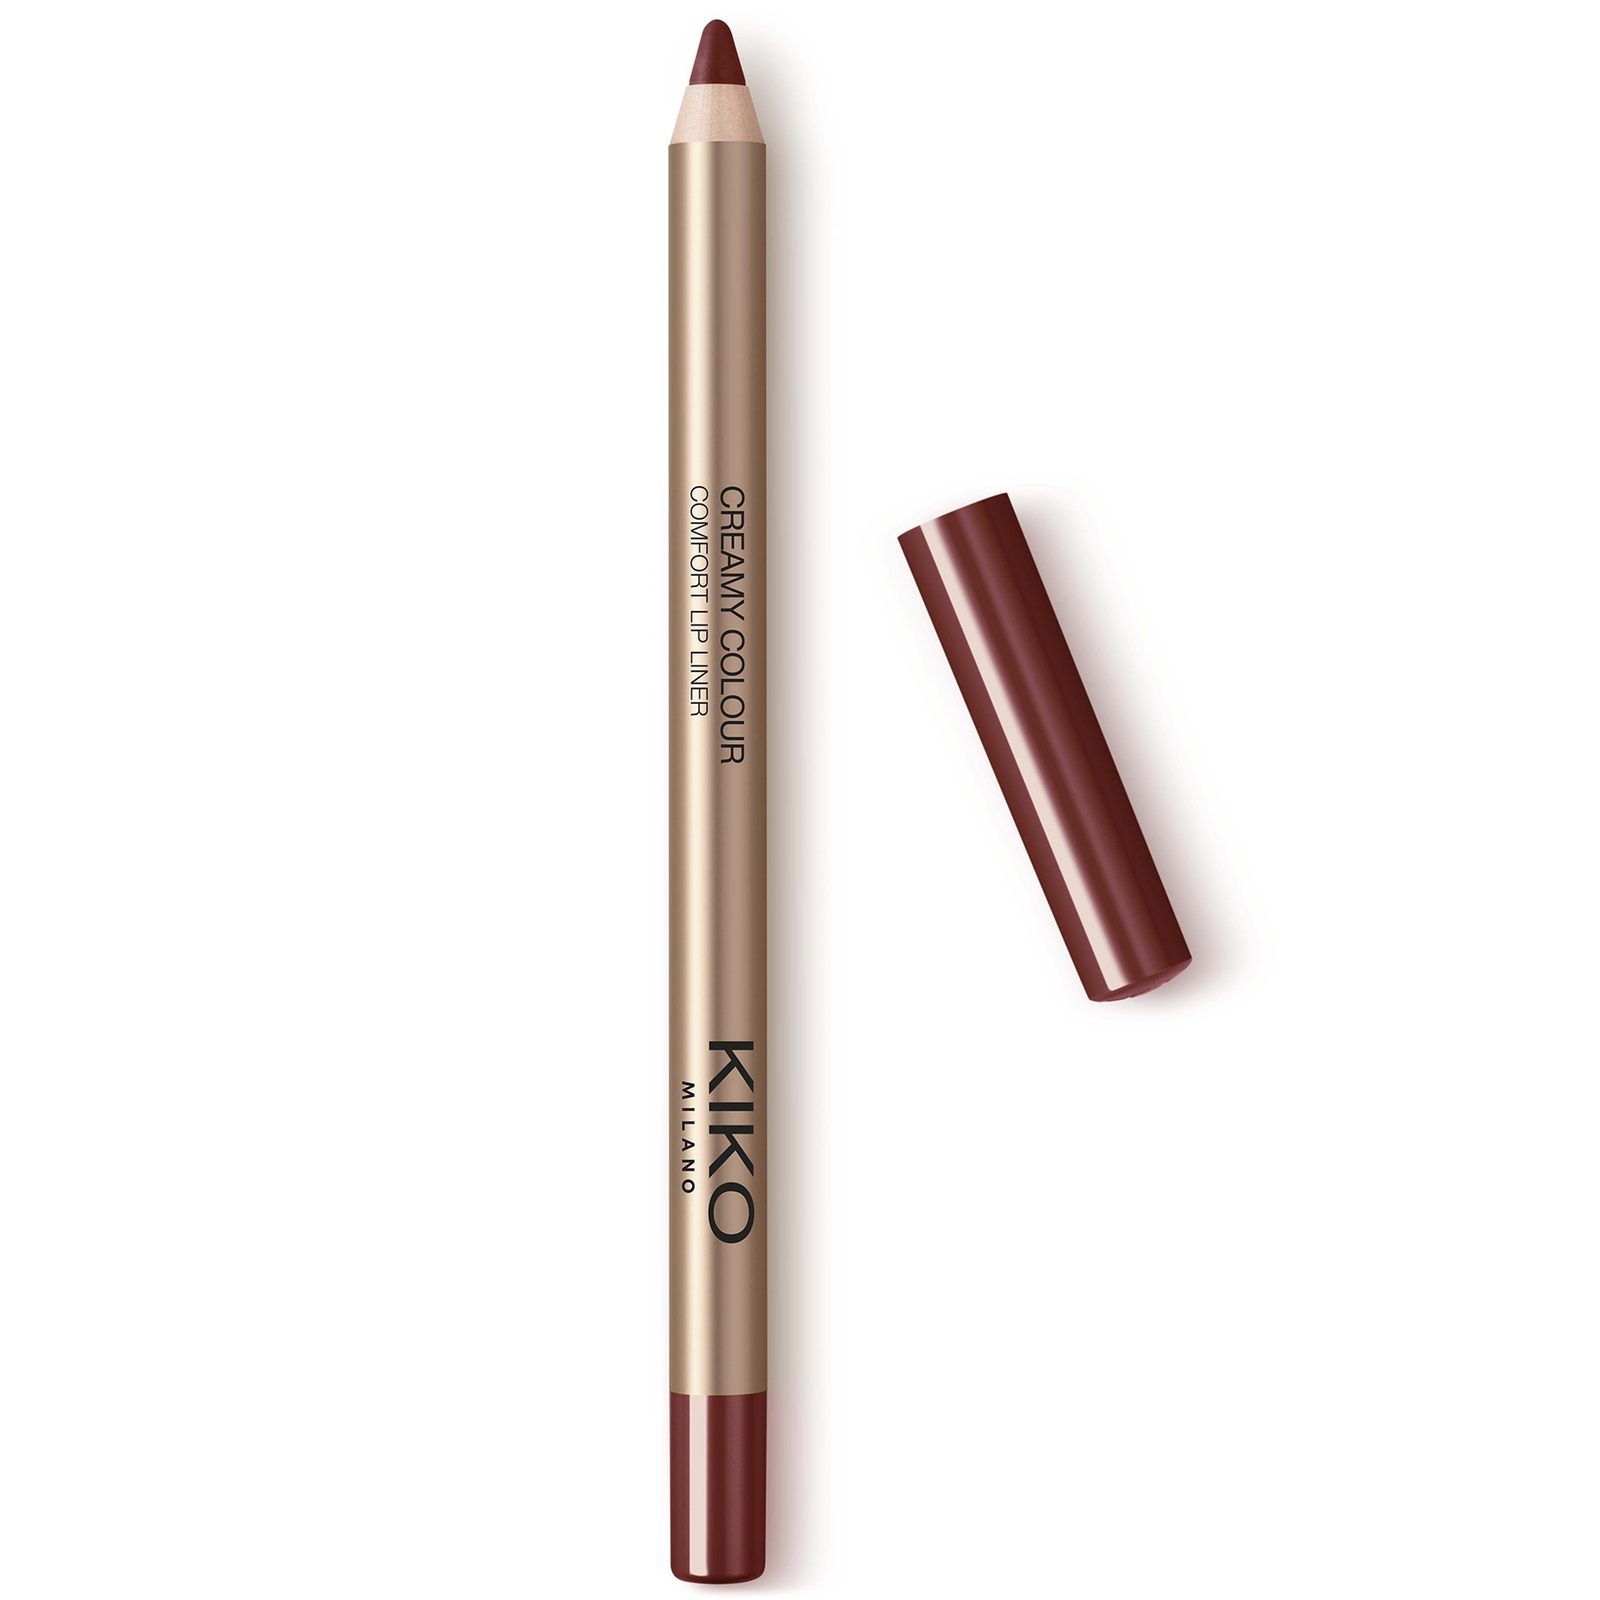 KIKO Milano Creamy Colour Comfort Lip Liner 1.2g (Various Shades) - 08 Marsala